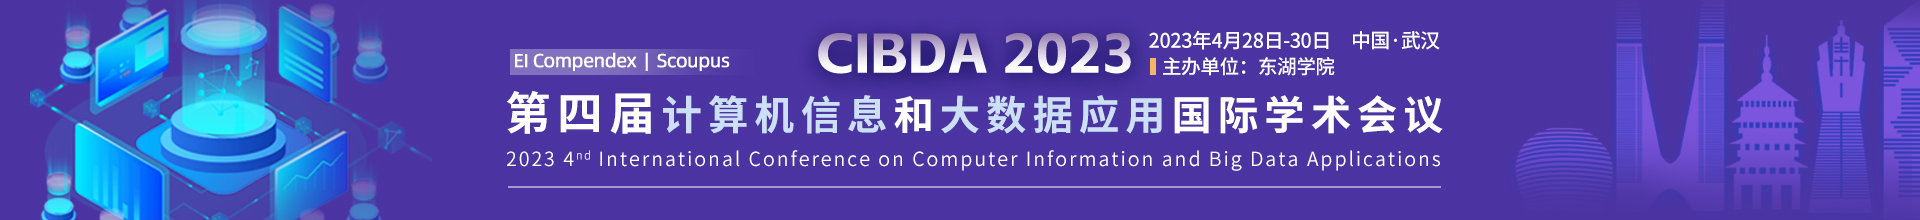 4月-武汉-CIBDA-上线平台1920X220.jpg